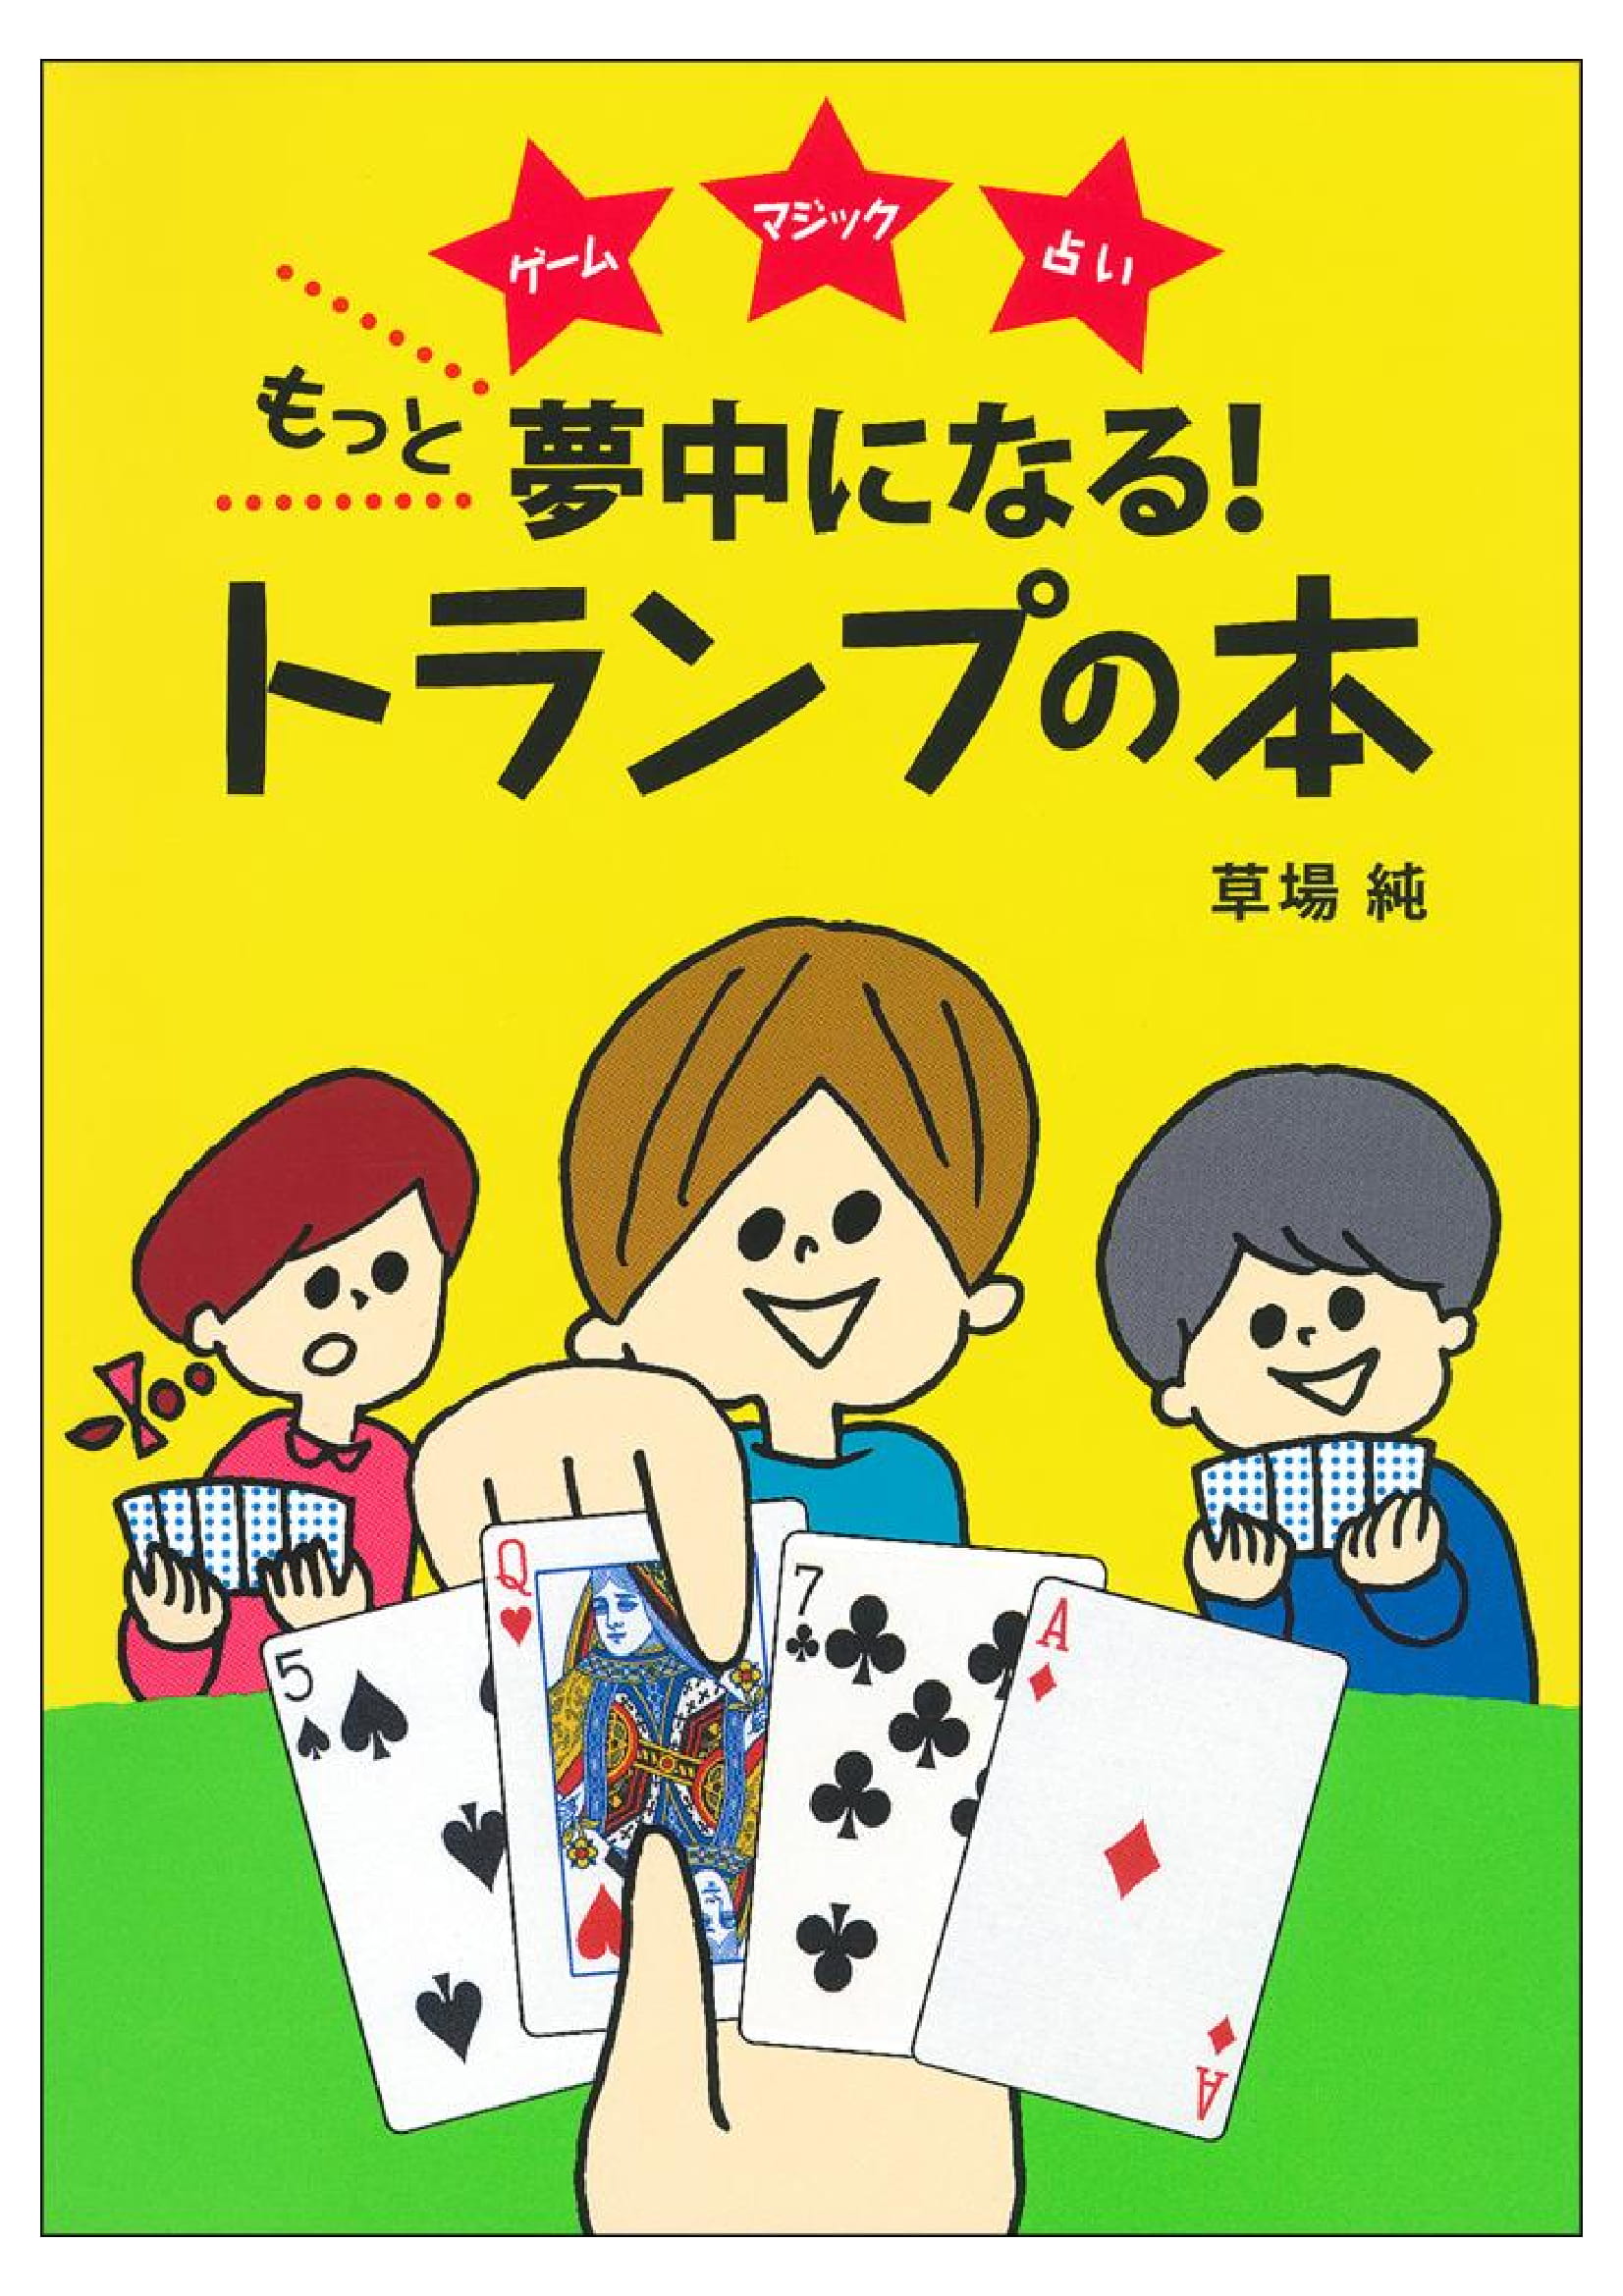 アナログの王様 トランプゲーム の本当の魅力を日本人はあまり知らない 株式会社主婦の友社 のプレスリリース